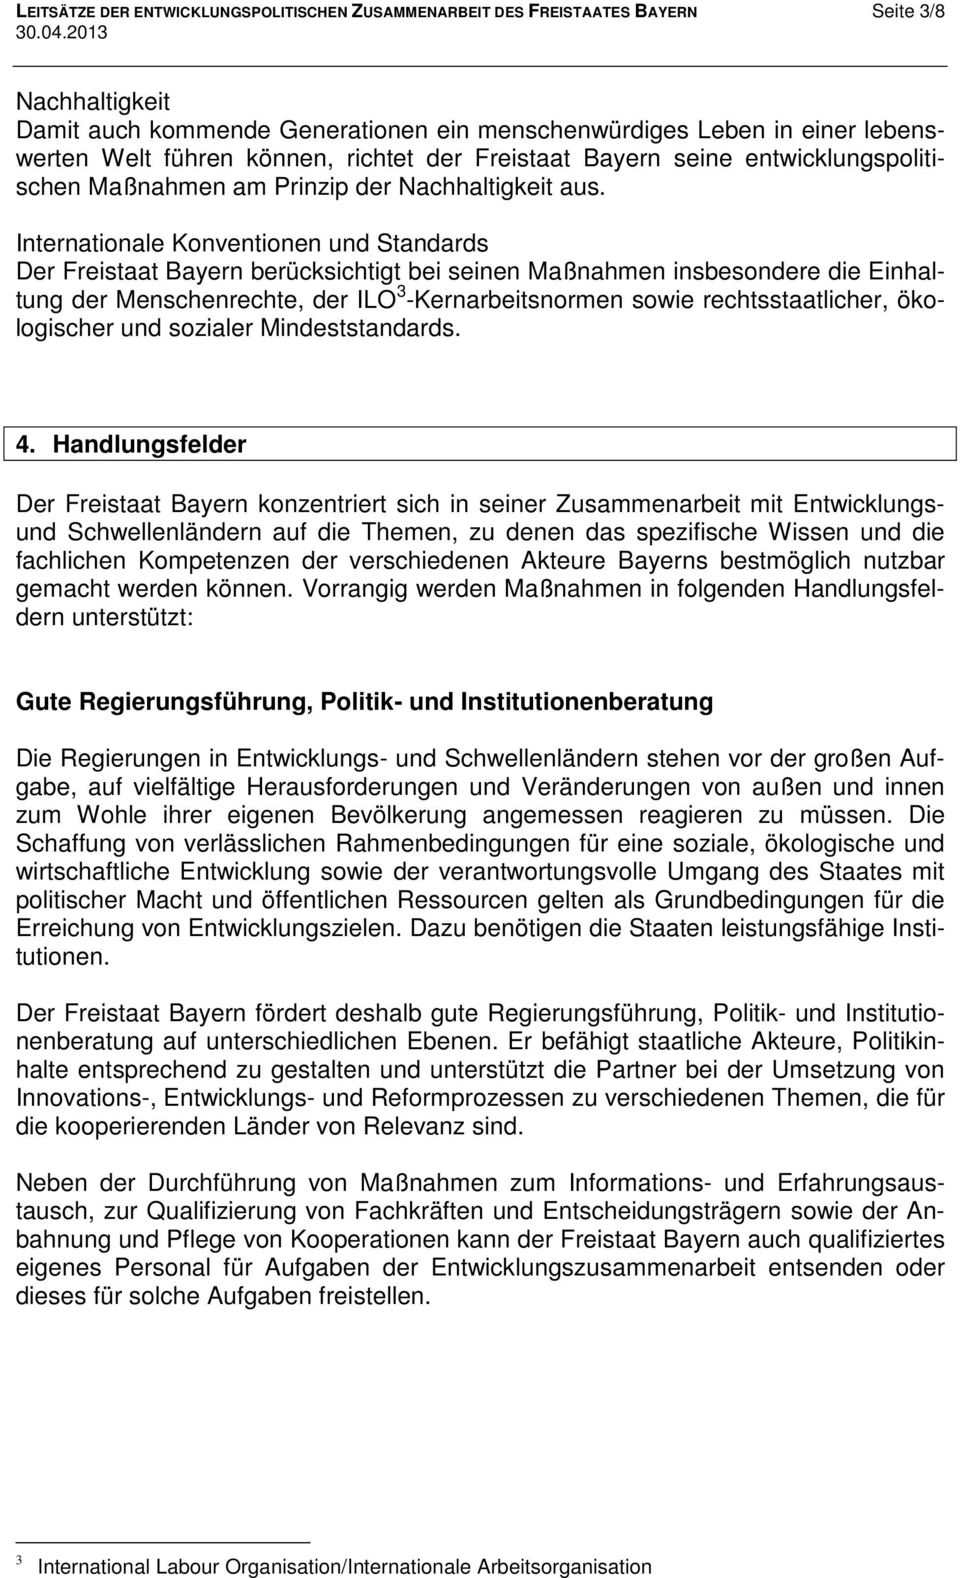 Internationale Konventionen und Standards Der Freistaat Bayern berücksichtigt bei seinen Maßnahmen insbesondere die Einhaltung der Menschenrechte, der ILO 3 -Kernarbeitsnormen sowie